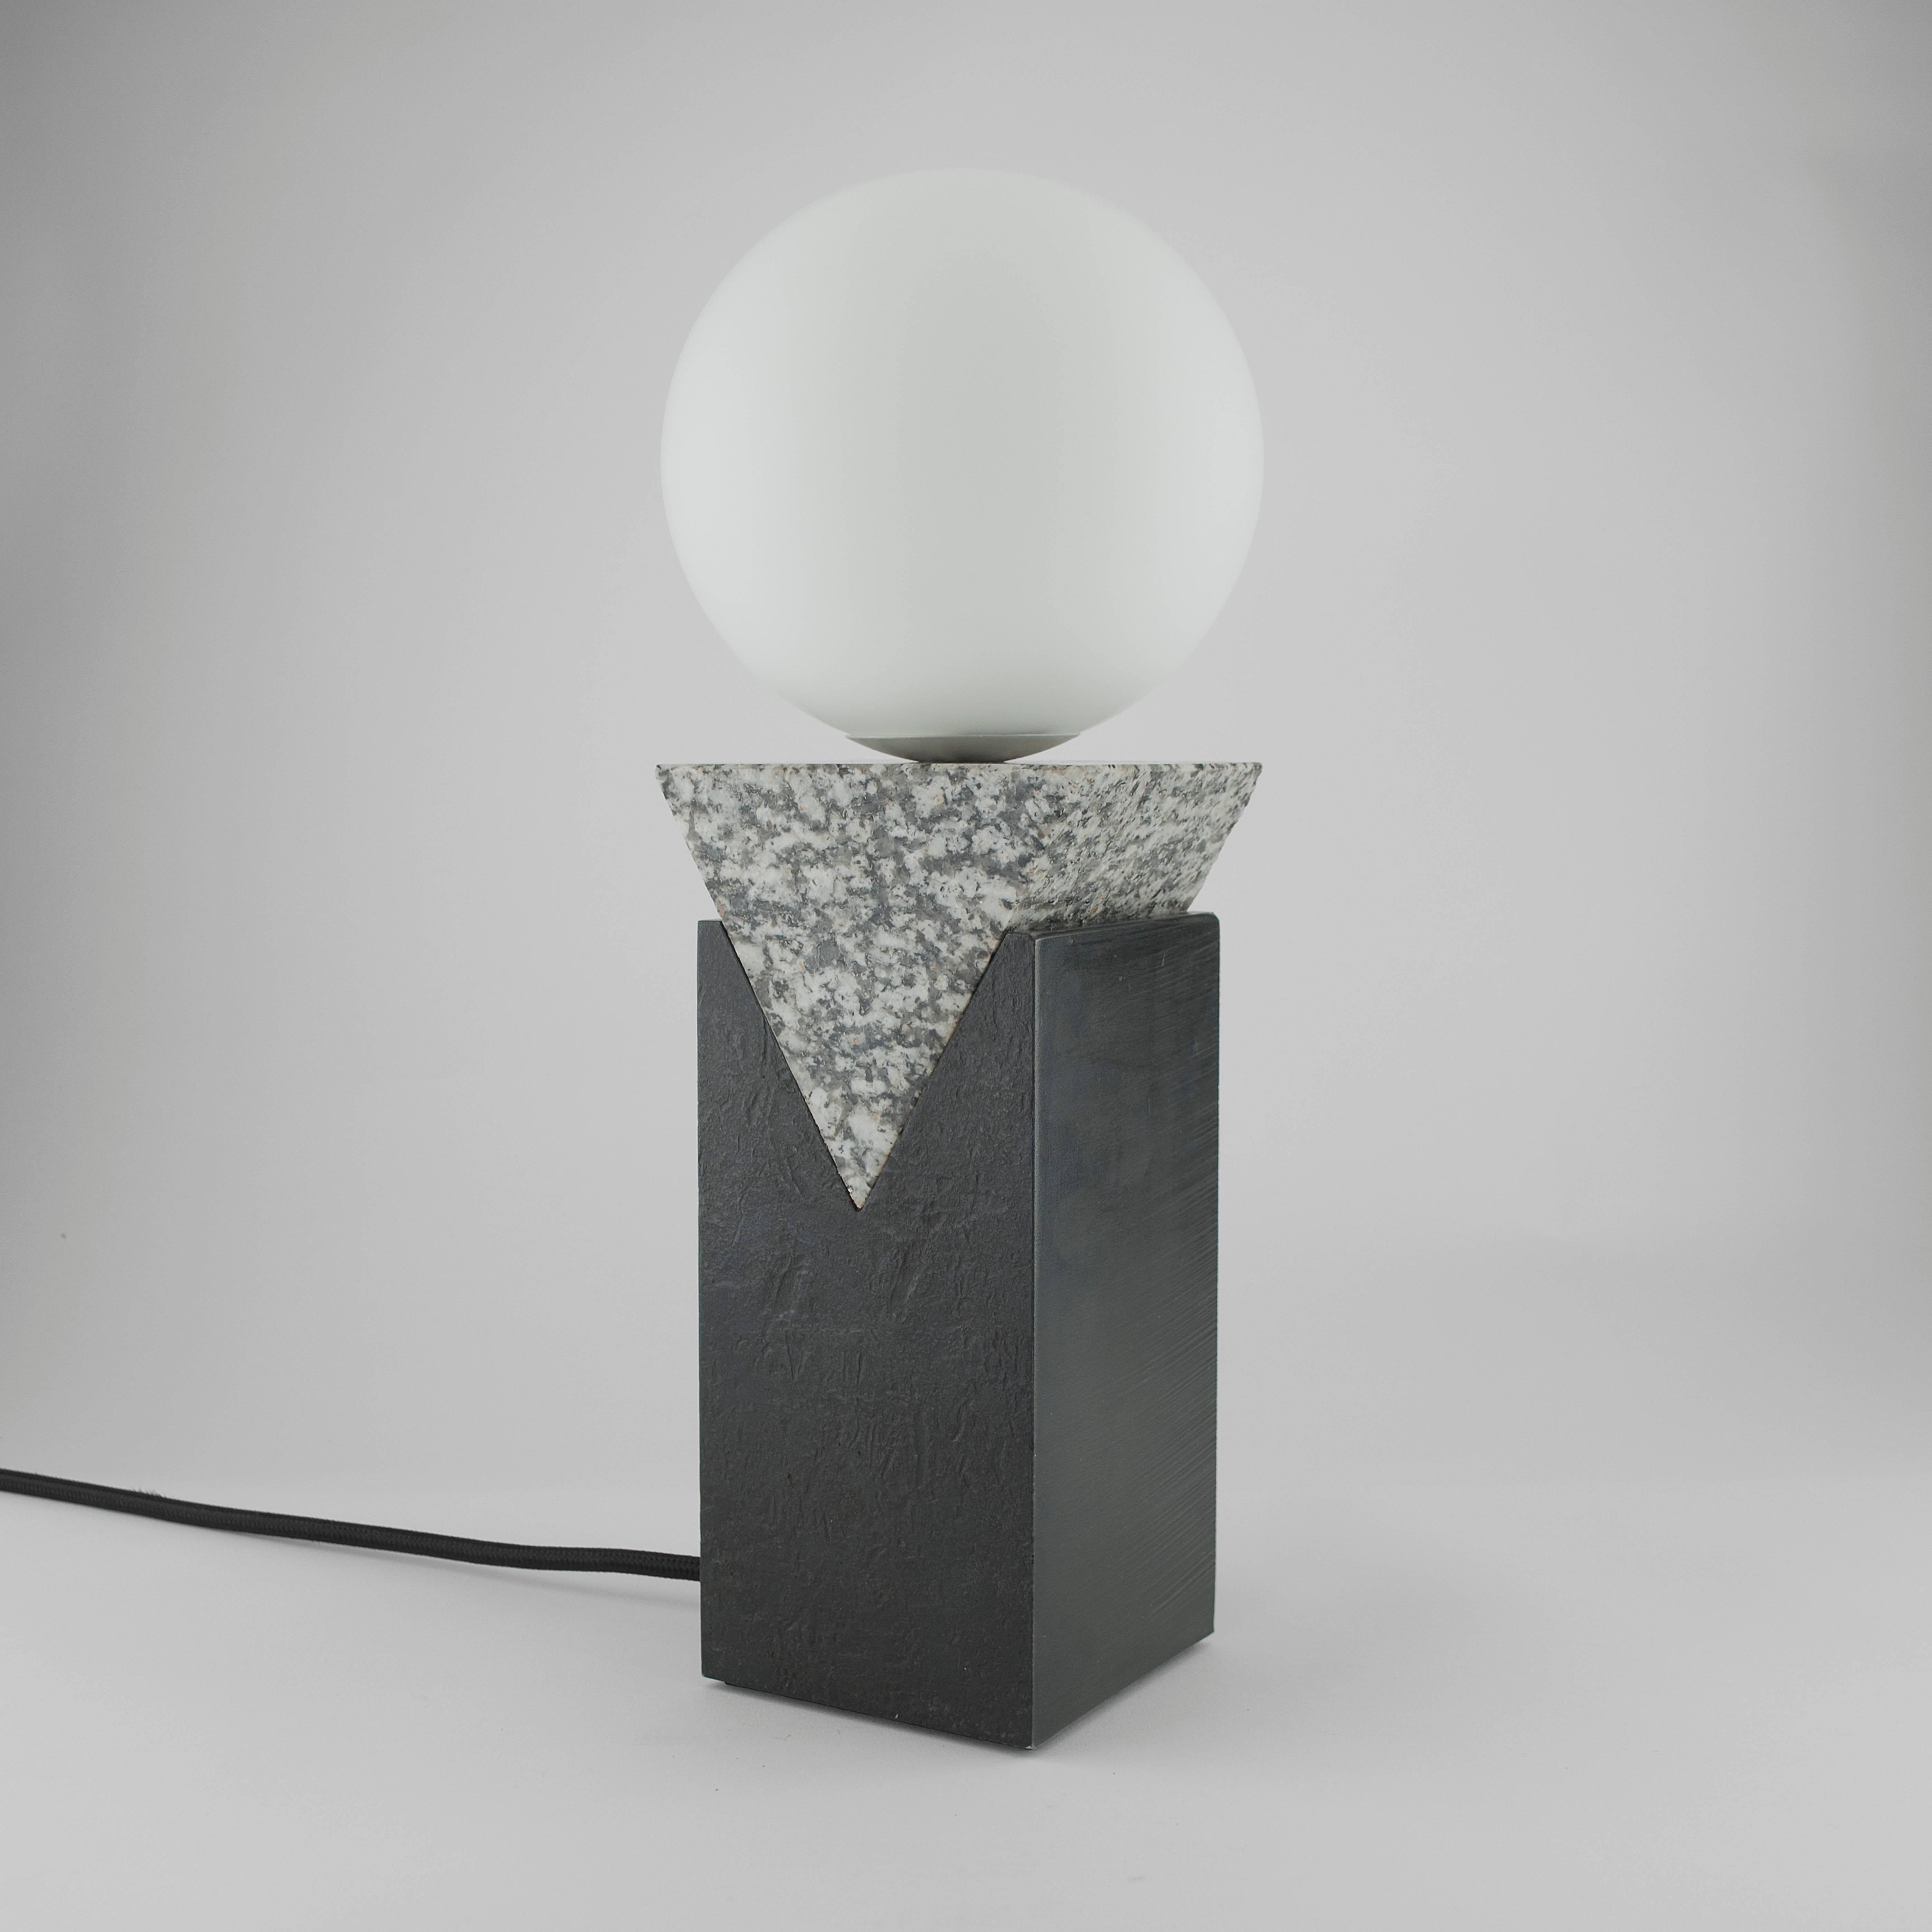 Monument Lamp - Triangle, Luna Pearl Granit, massiver Stahlknüppel und matte Opalglas-Kugel

Louis Jobst' Monument Lamp - Triangle ist von hoher Qualität, maßgeschneidert und handgefertigt aus soliden Rohstoffen. Die Sockel sind mit einer schwarzen